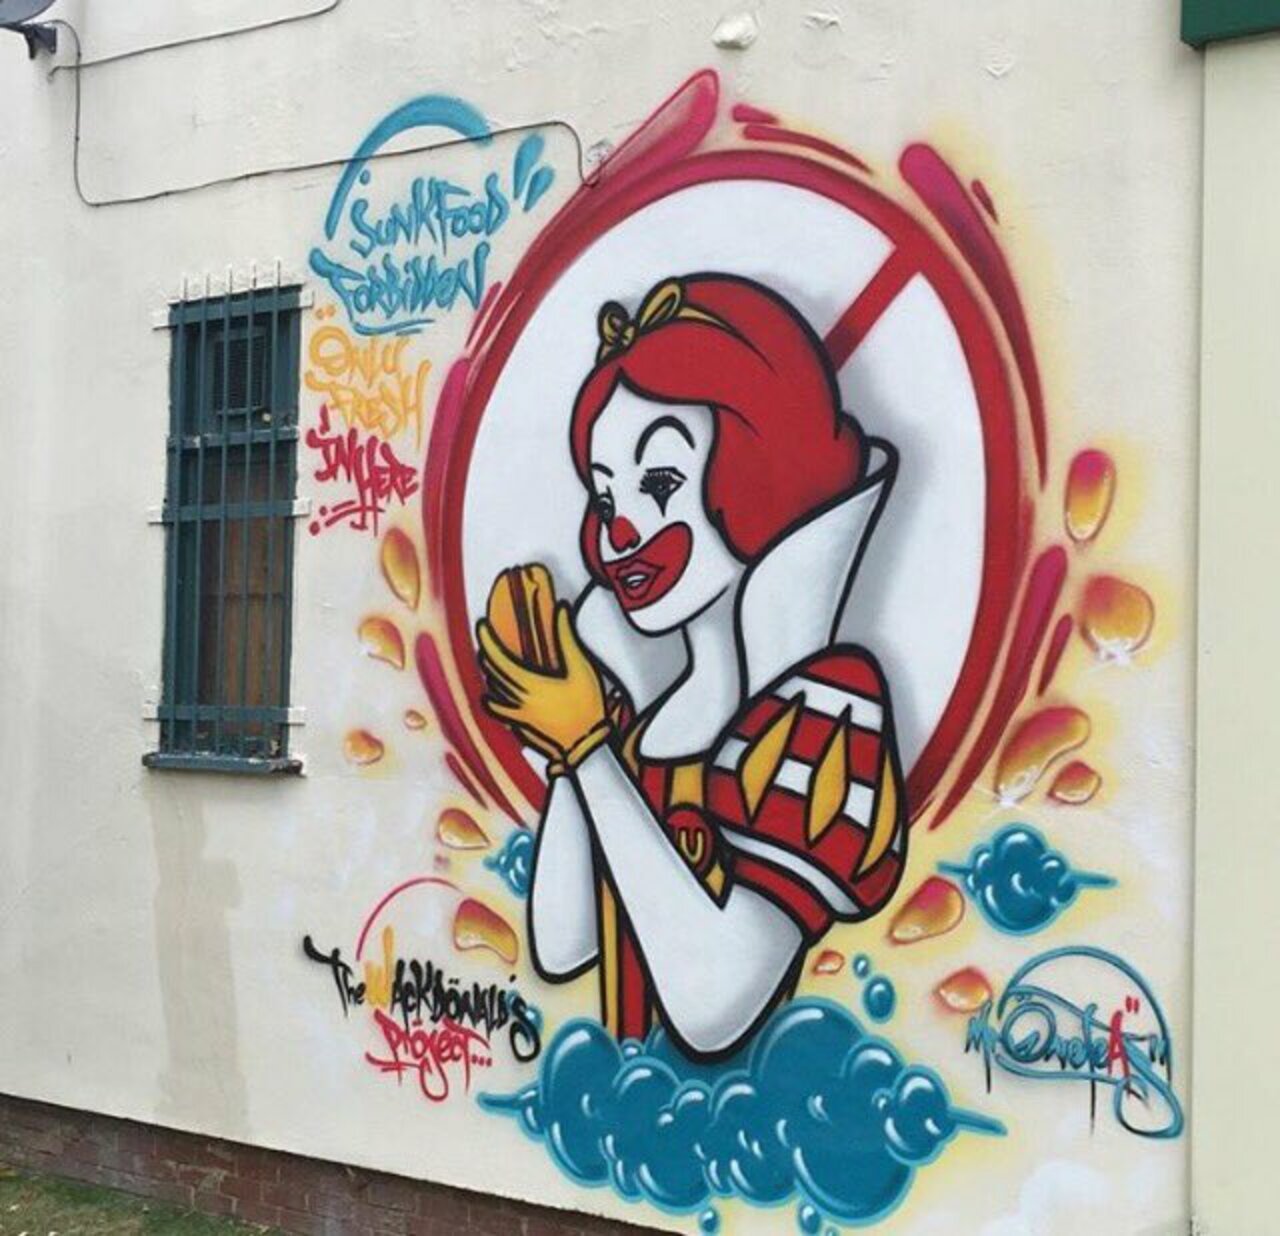 Street art in Camden, London#graffiti #streetart https://t.co/KZIKmsEW6k